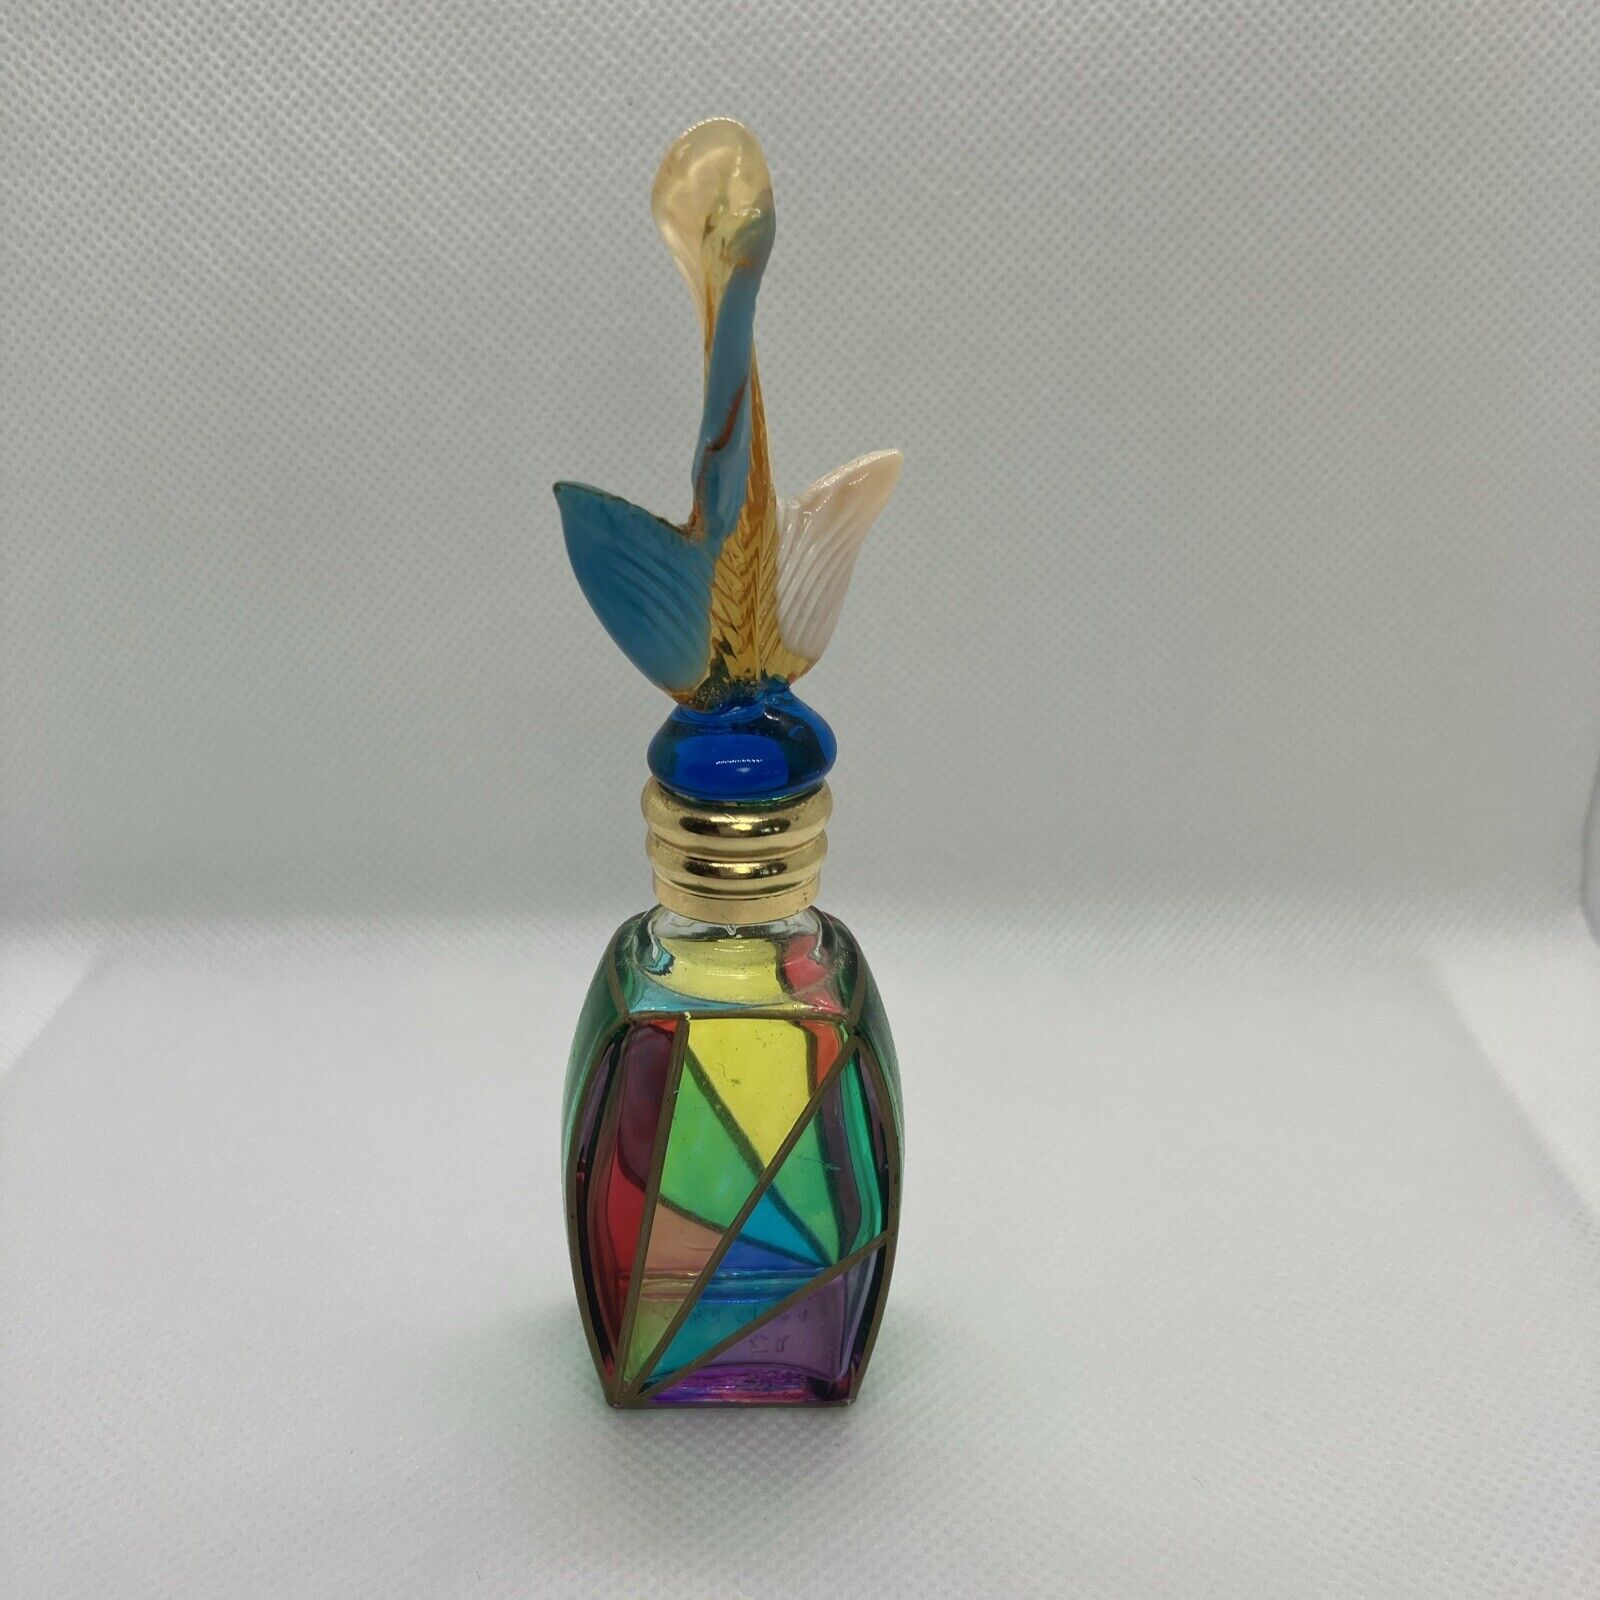 VTG Italian Perfume Bottle With Stopper. Hand Painted Art Glass, Murano .